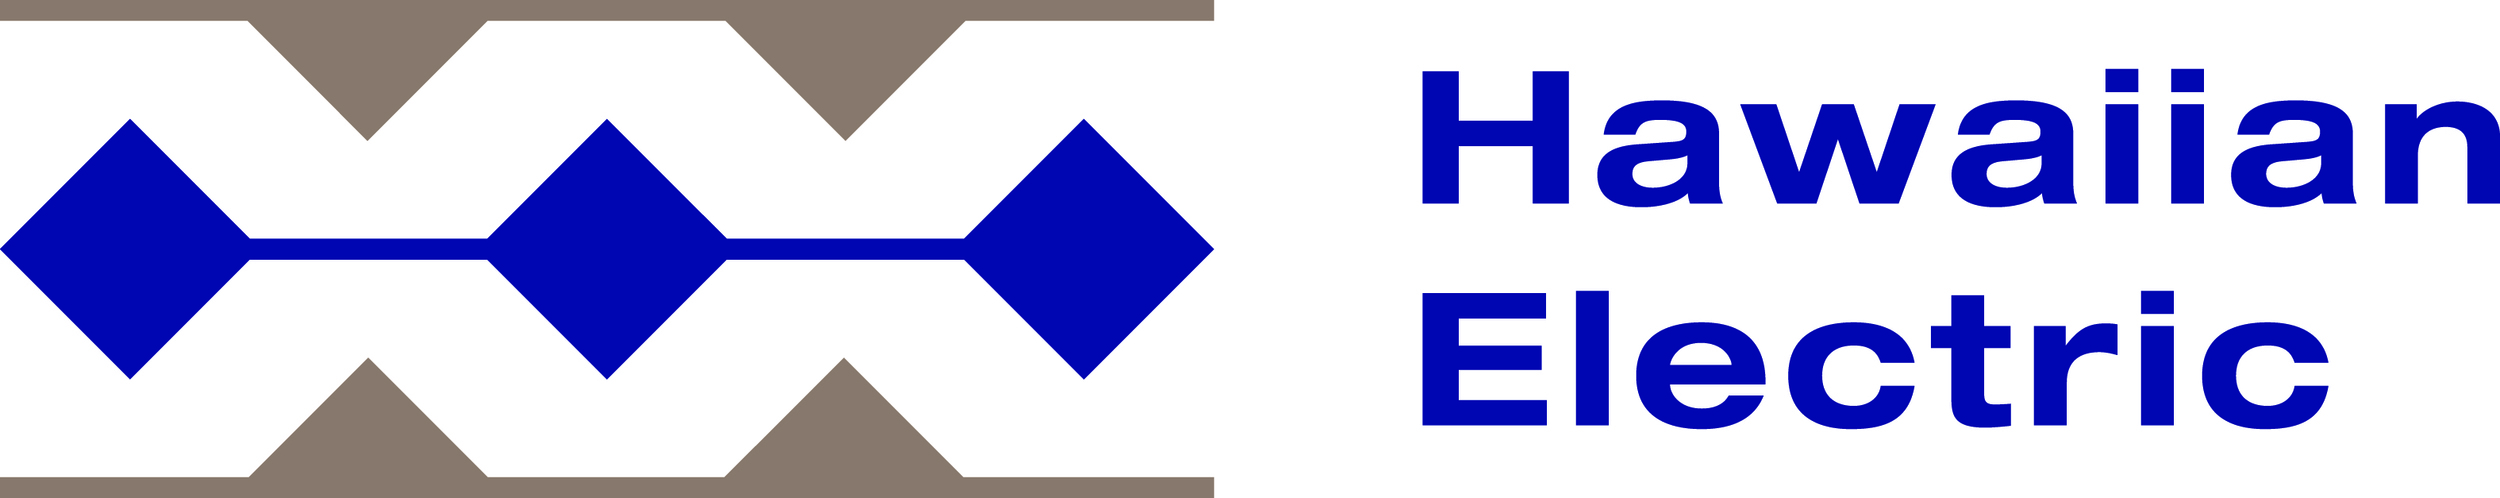 hawaiian_electric_logo1.jpg